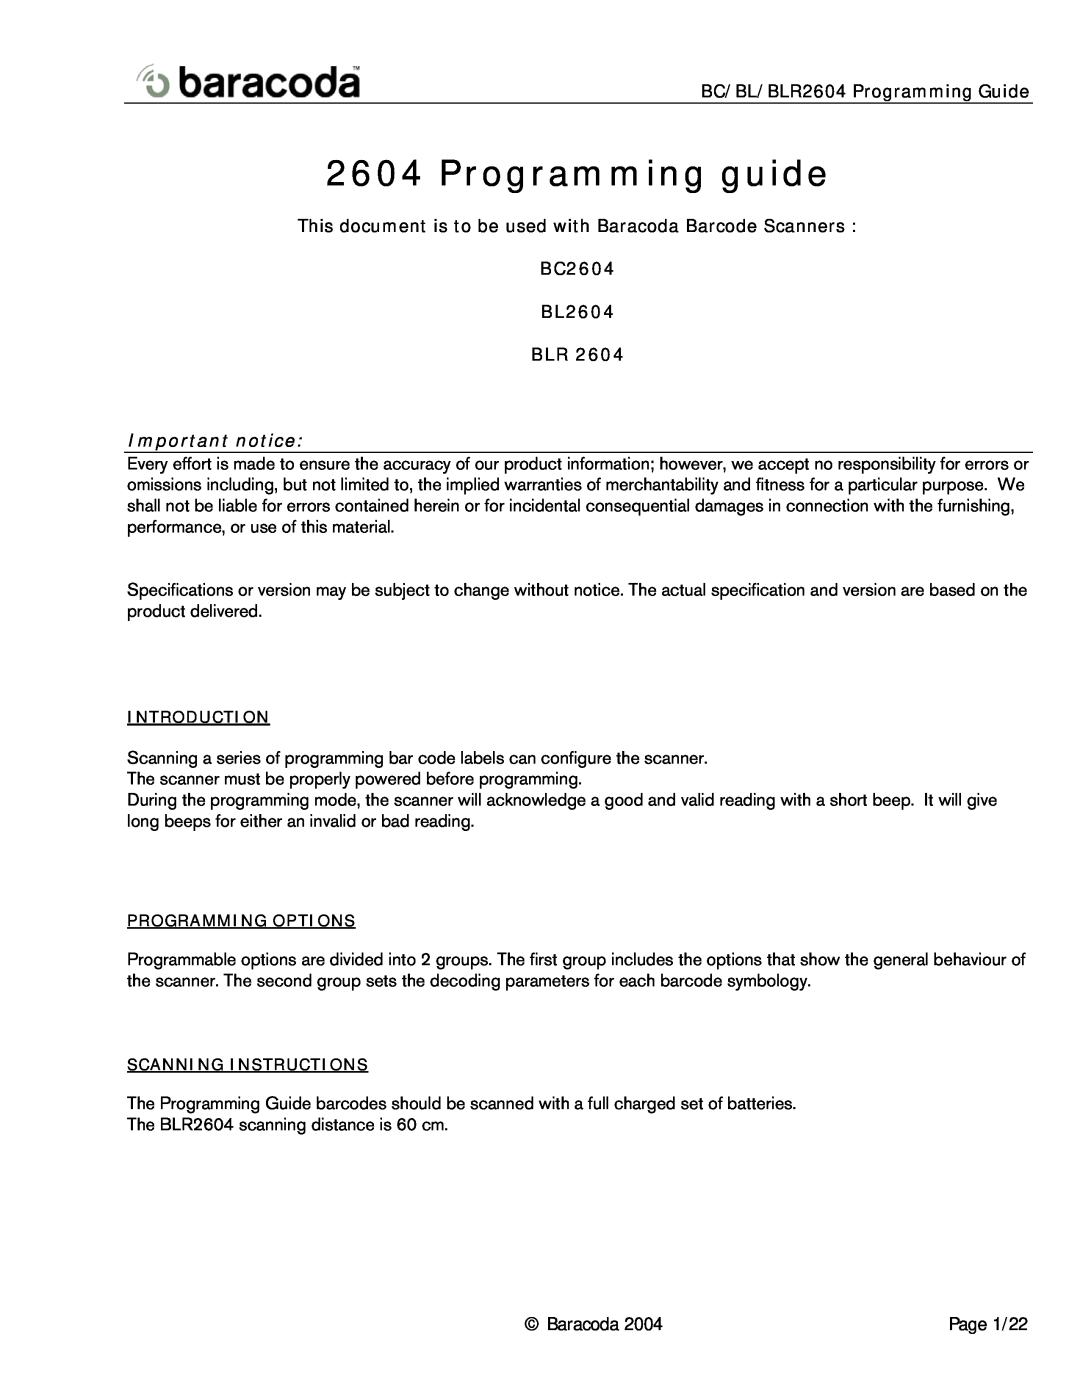 Baracoda specifications BC/BL/BLR2604 Programming Guide, BC2604 BL2604 BLR, Programming guide, Important notice 